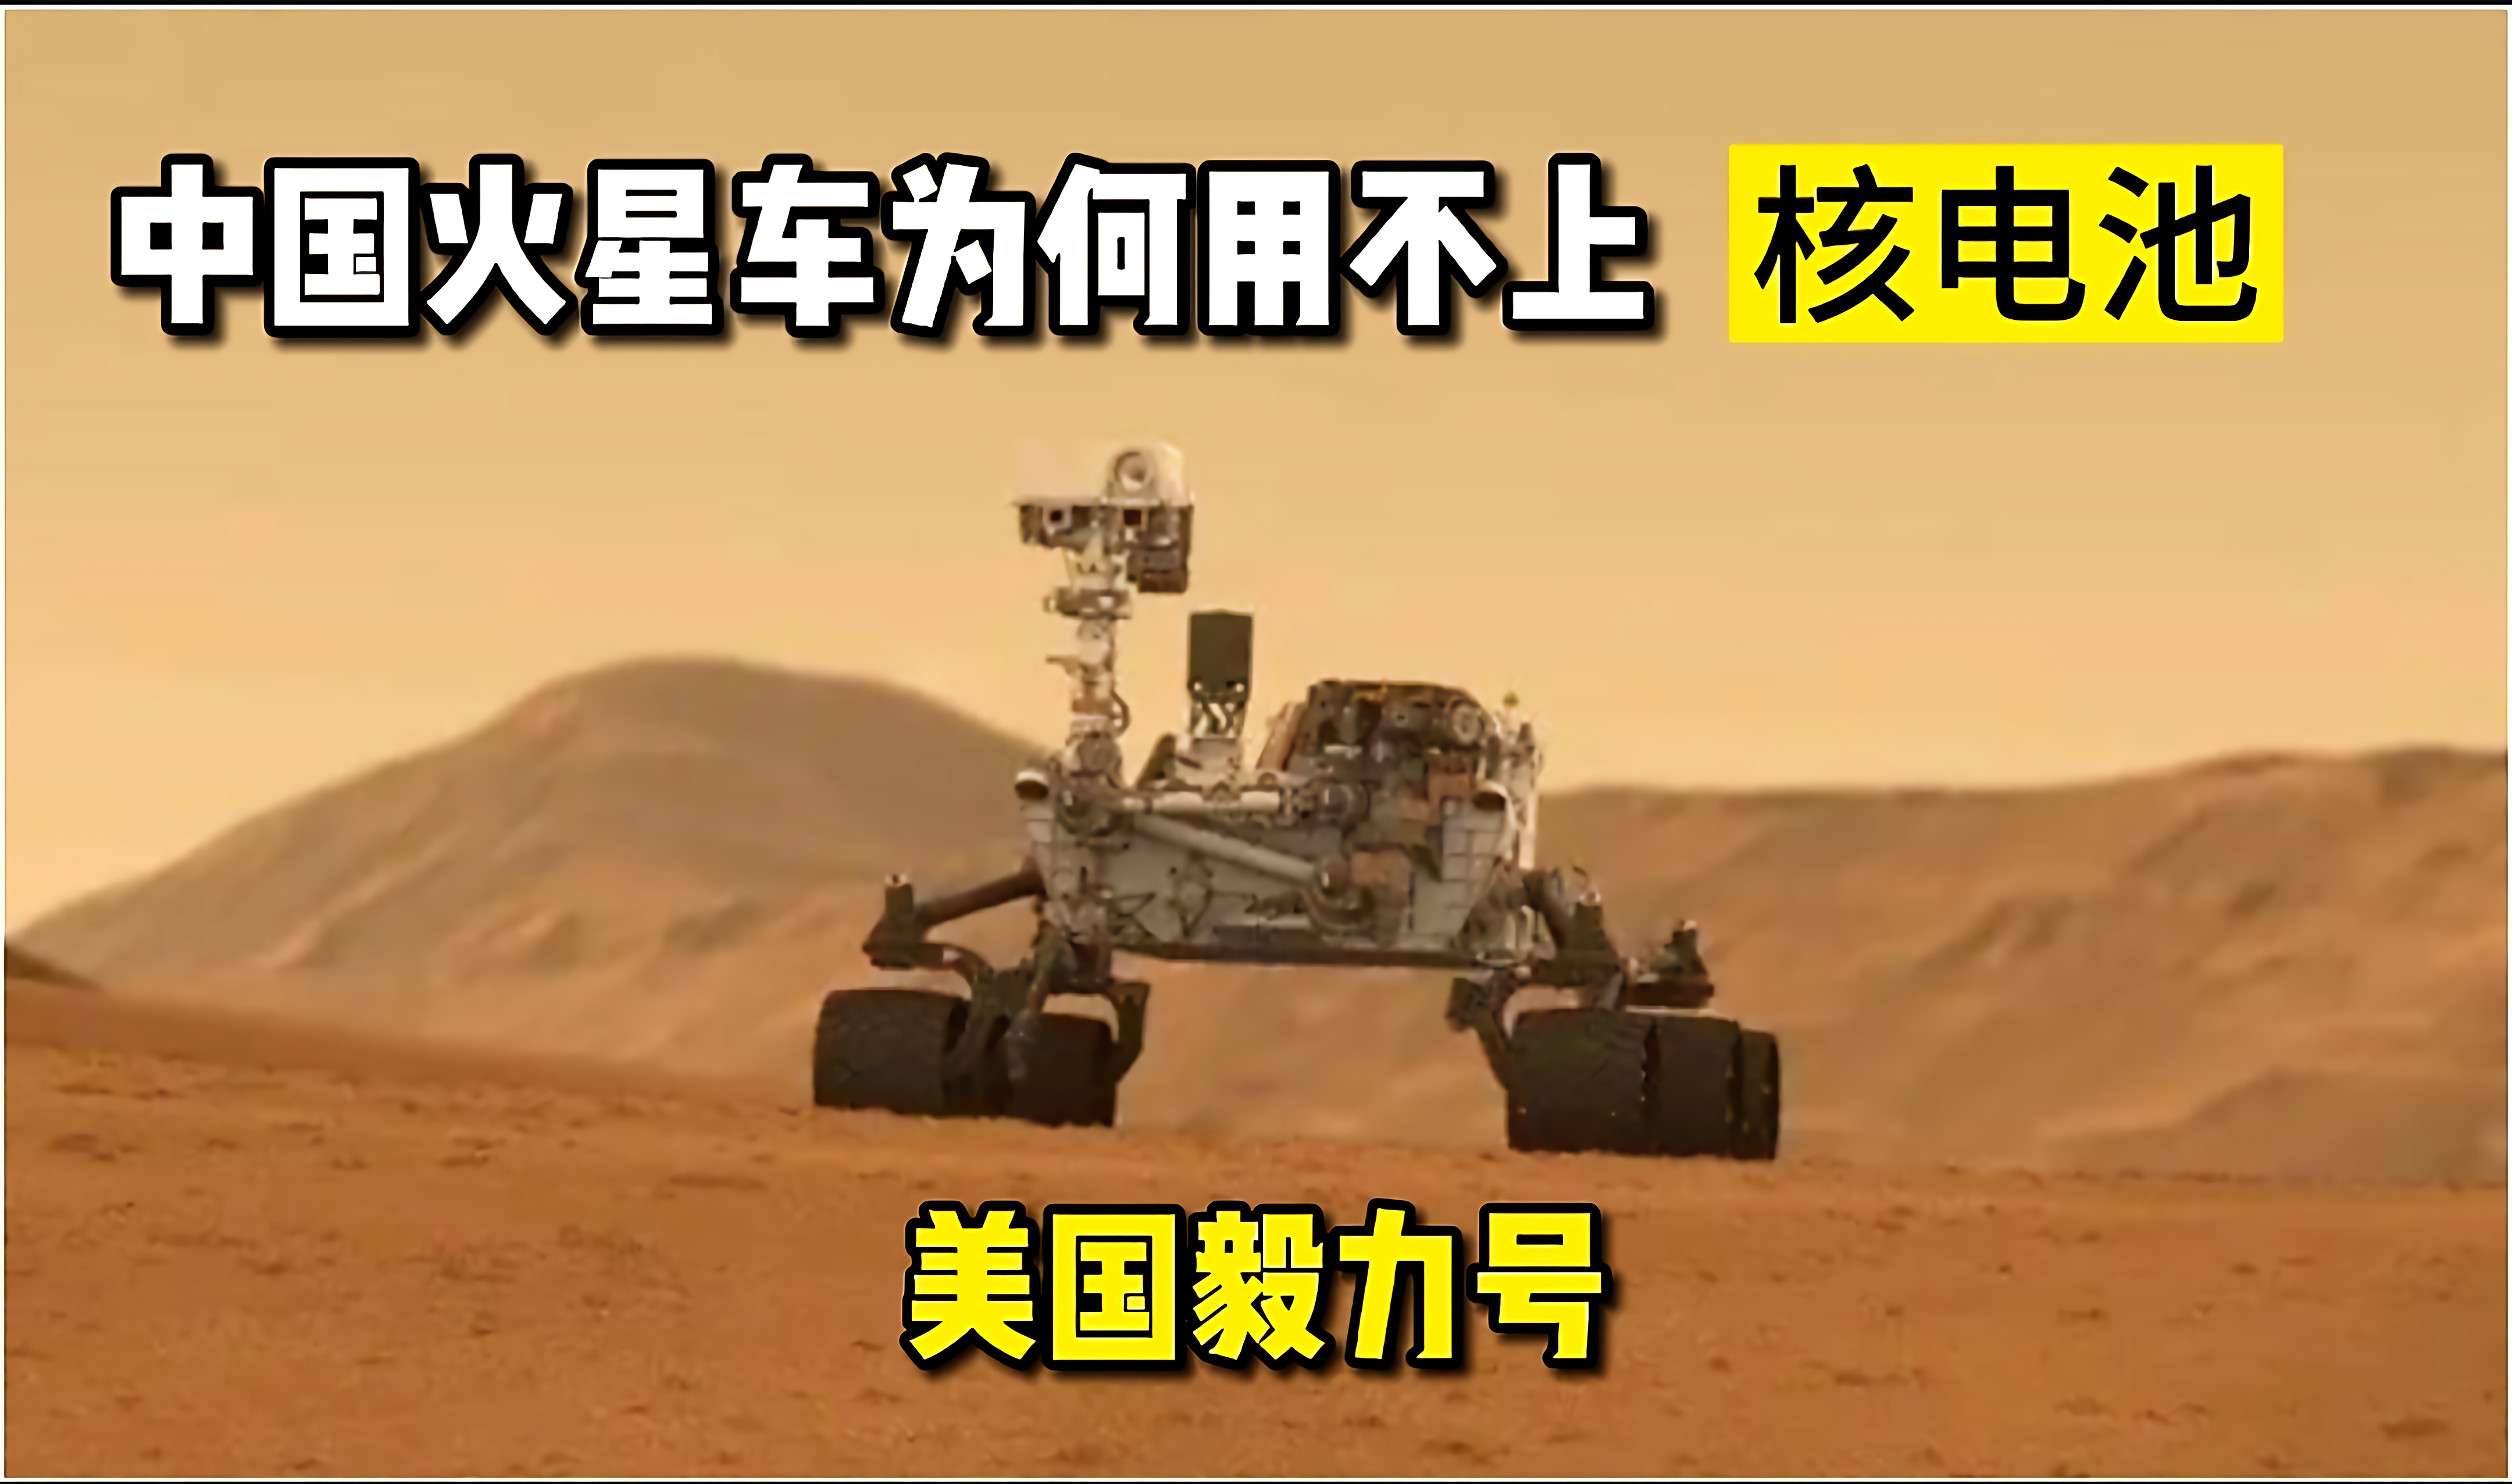 中国火星车将比毅力号还晚三个月到达，为何依旧用不上核电池？